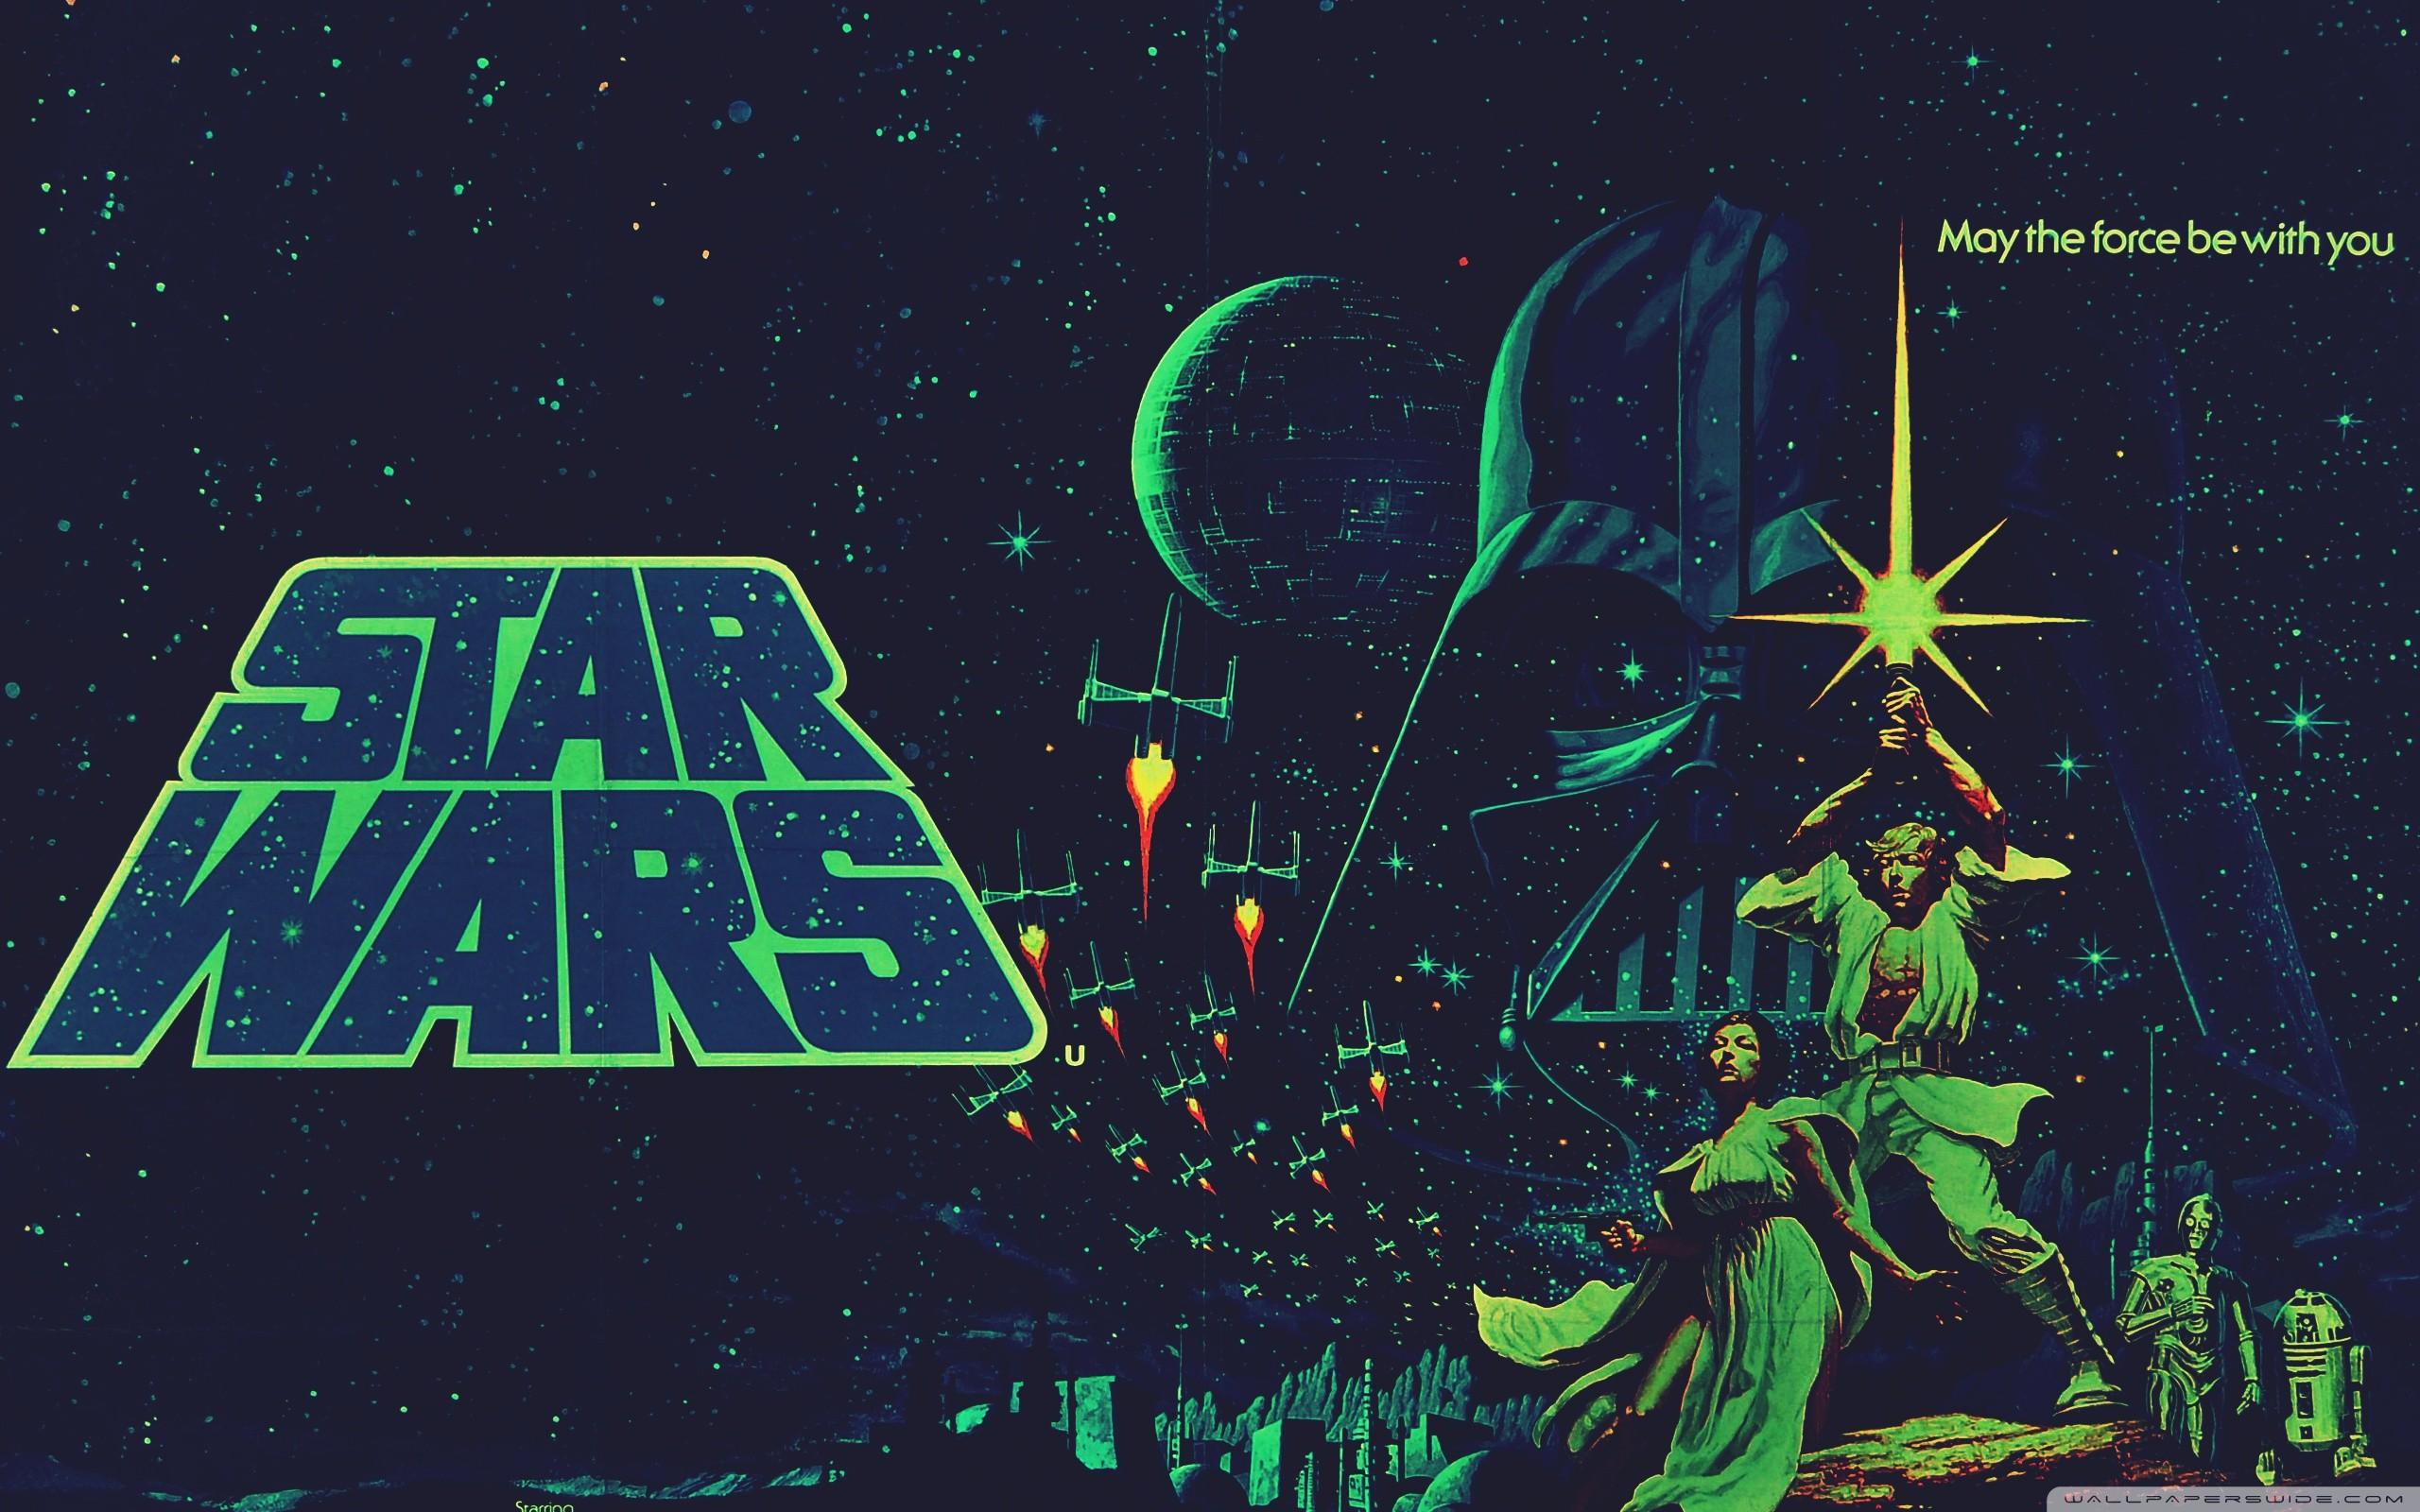  Star Wars Hintergrundbild 2560x1600. Vintage Star Wars Wallpaper Free Vintage Star Wars Background